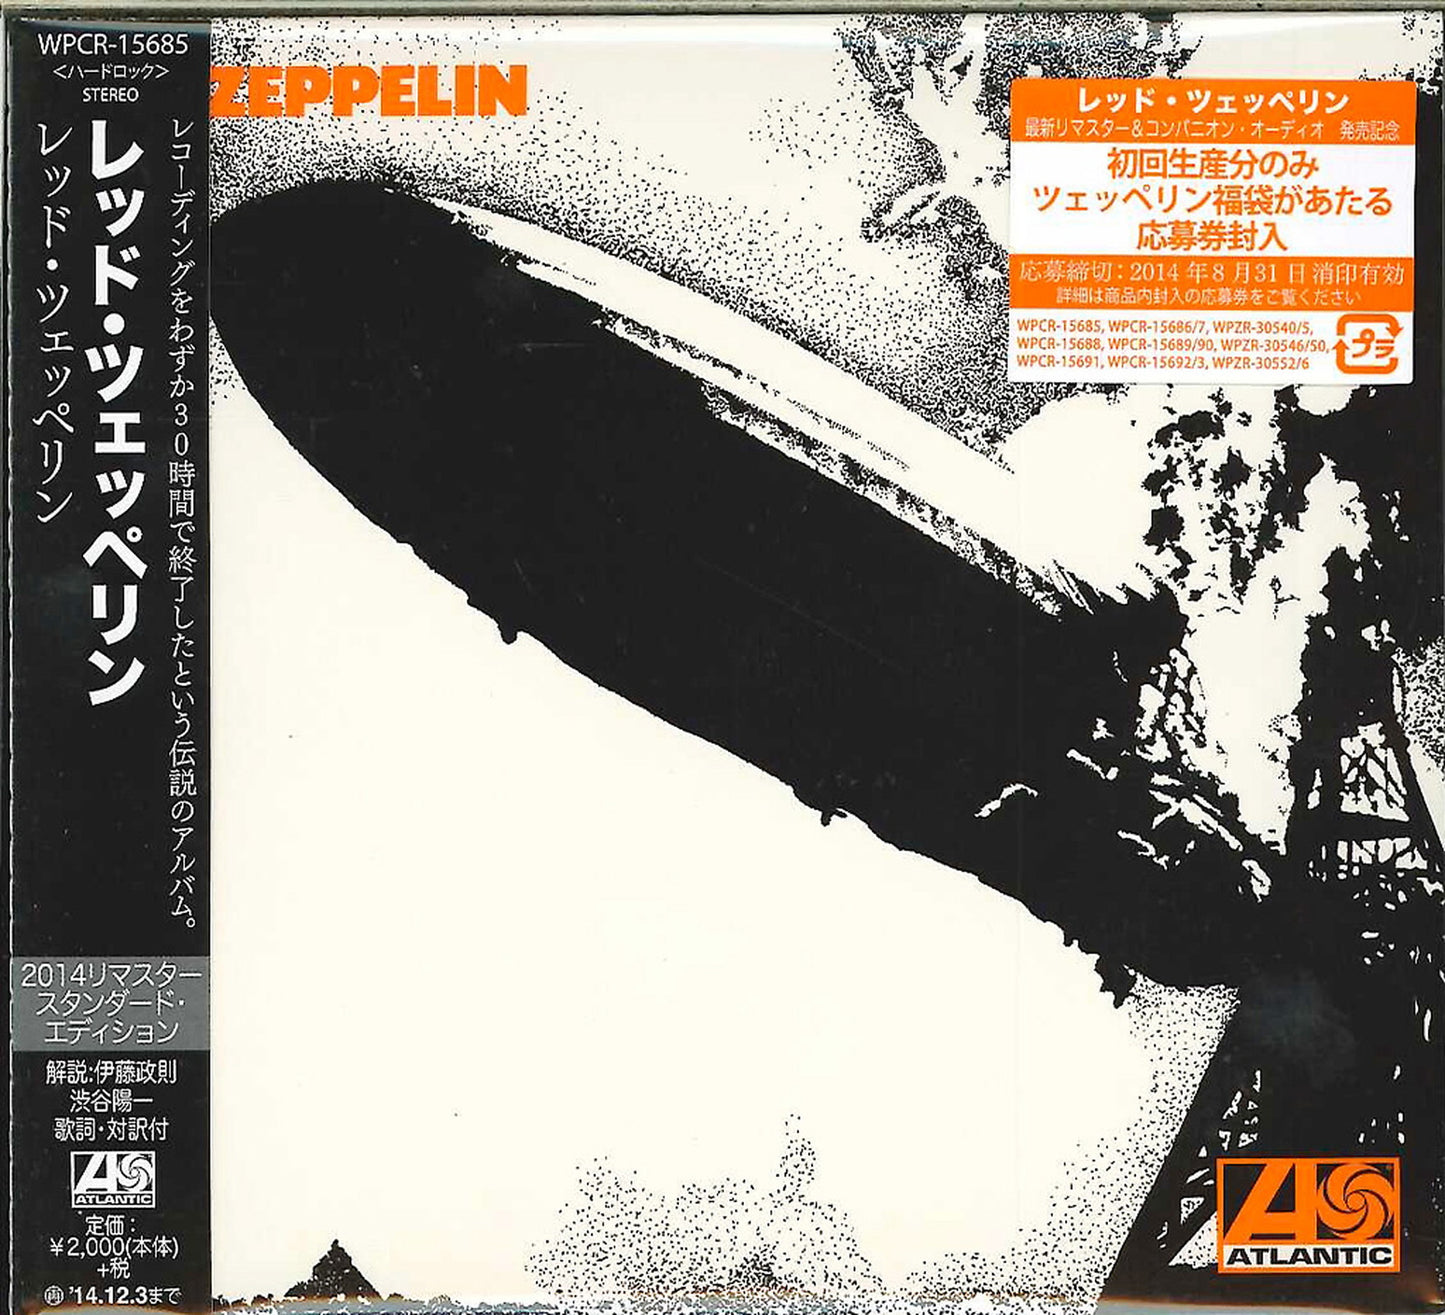 Led Zeppelin - Led Zeppelin Standard Edition - Japan CD